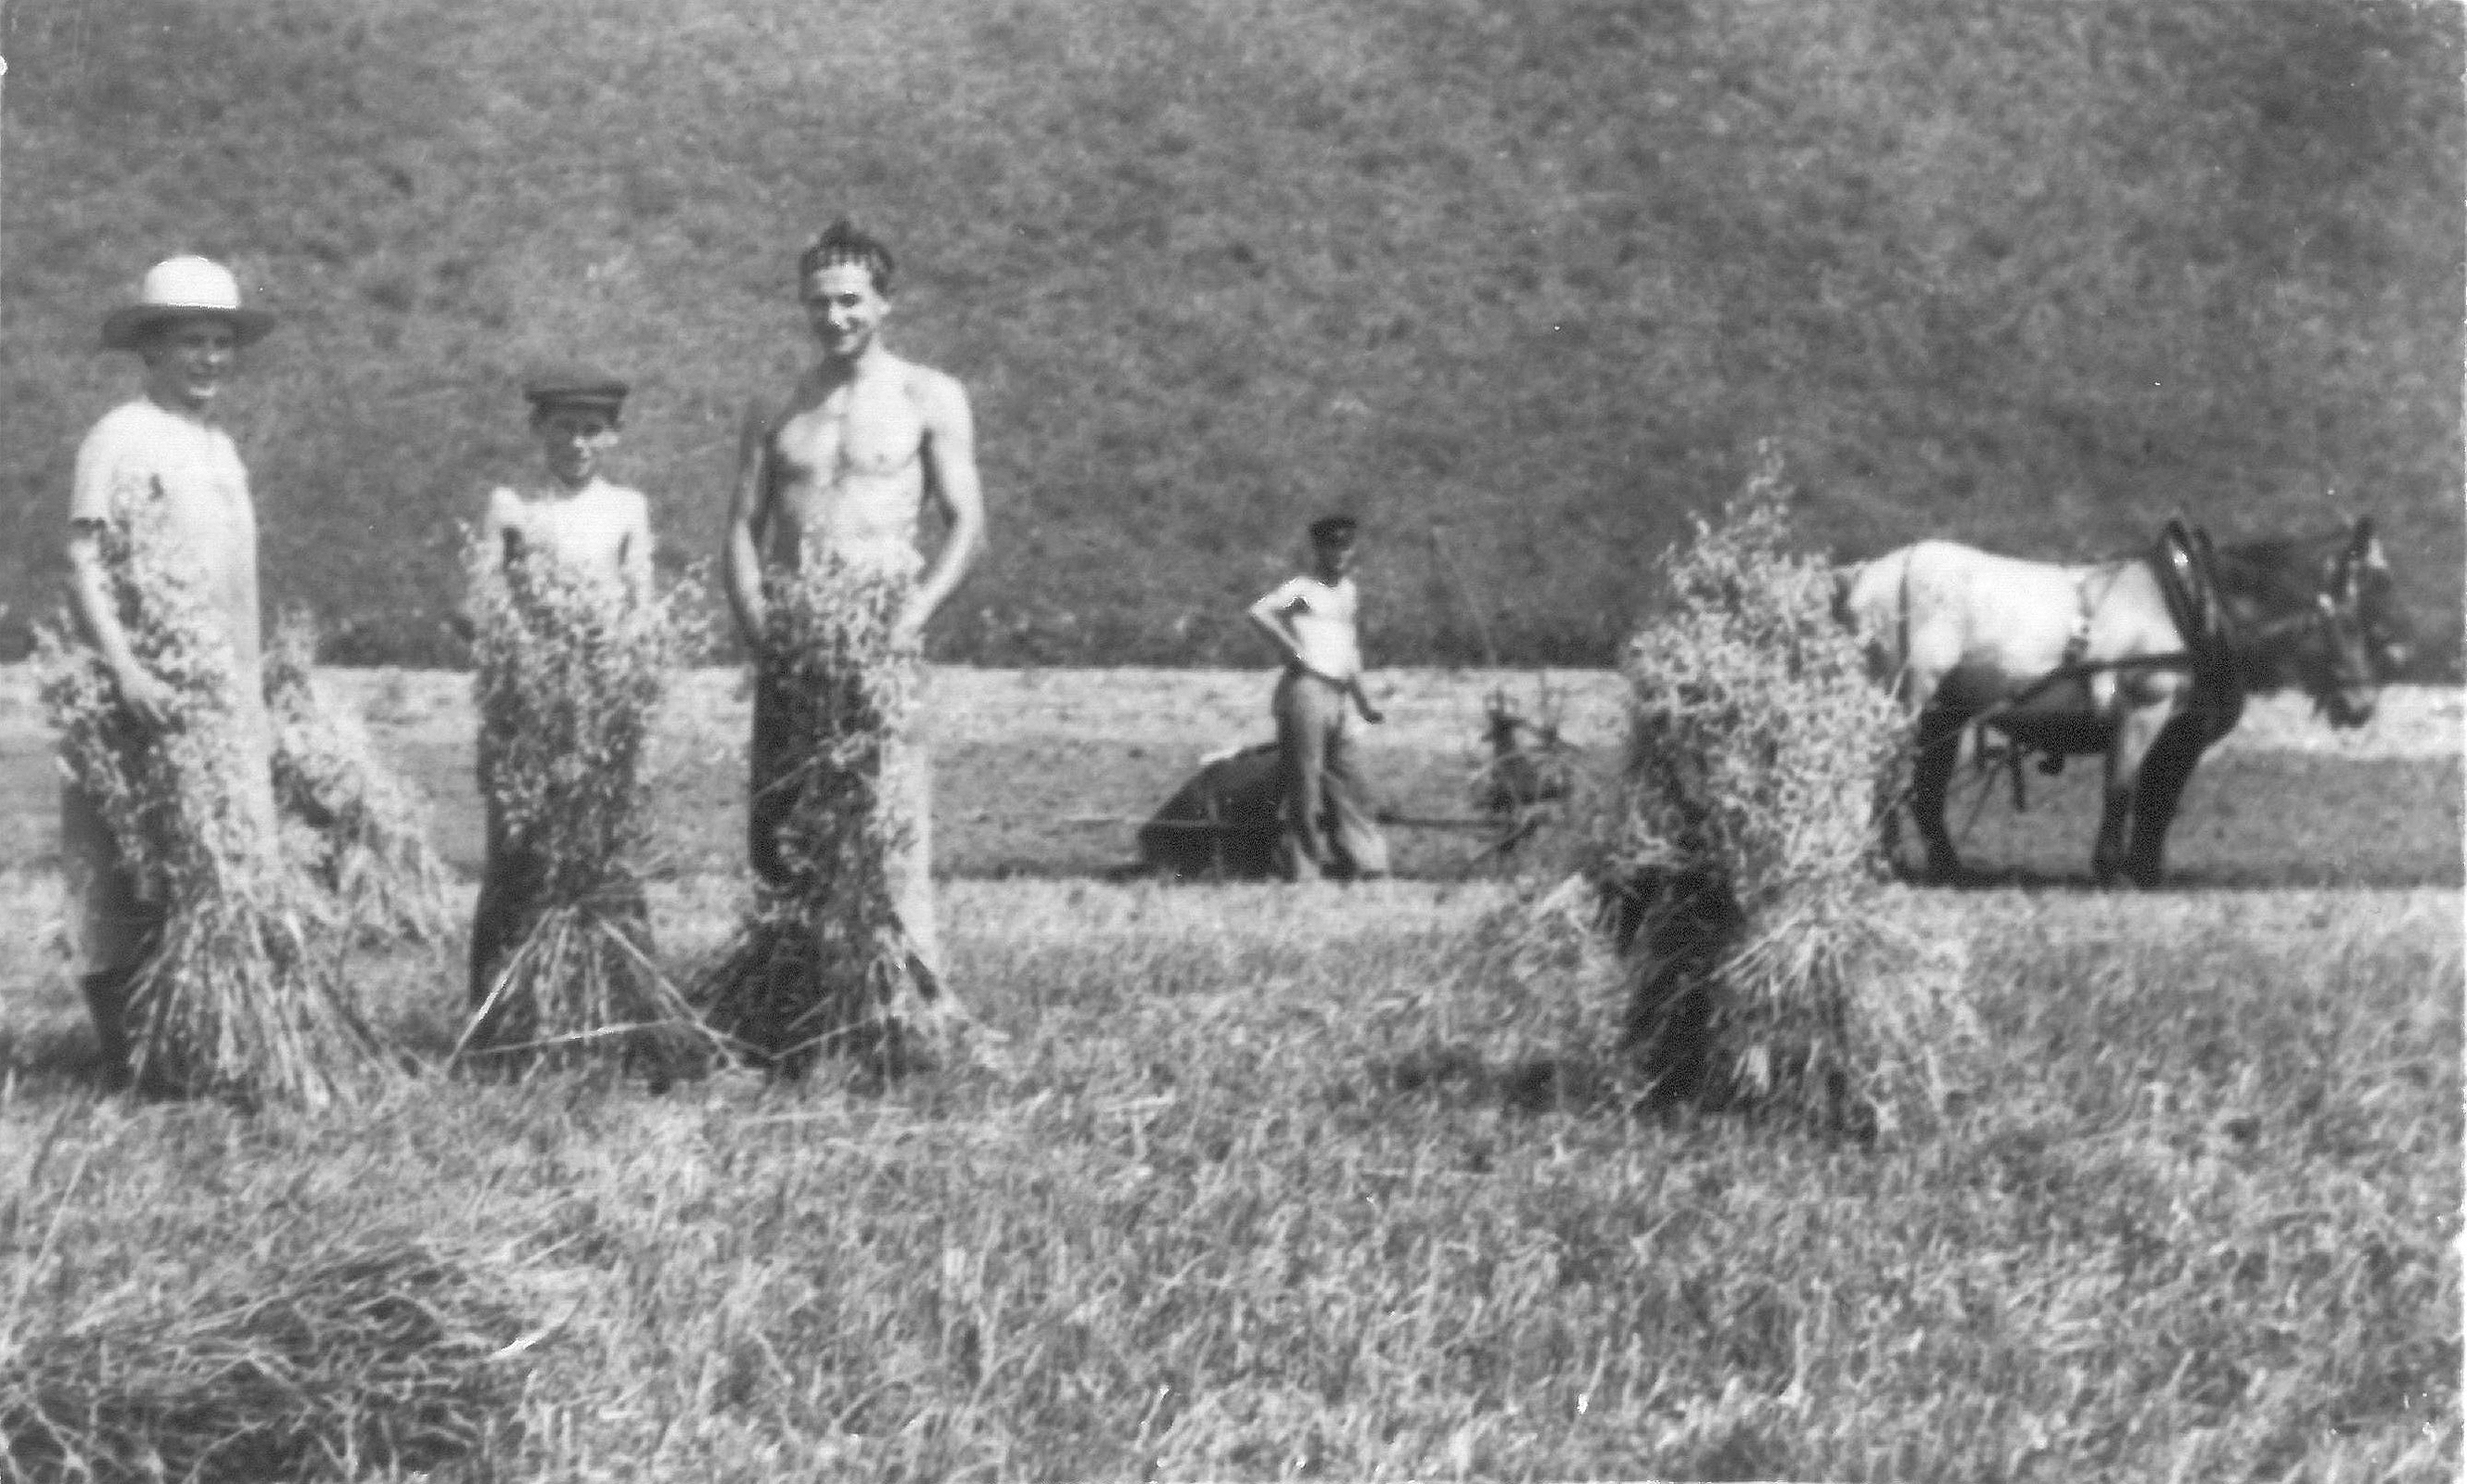 Arnold Wochenmark, Dritter von links, als Landarbeiter in der Schweiz.